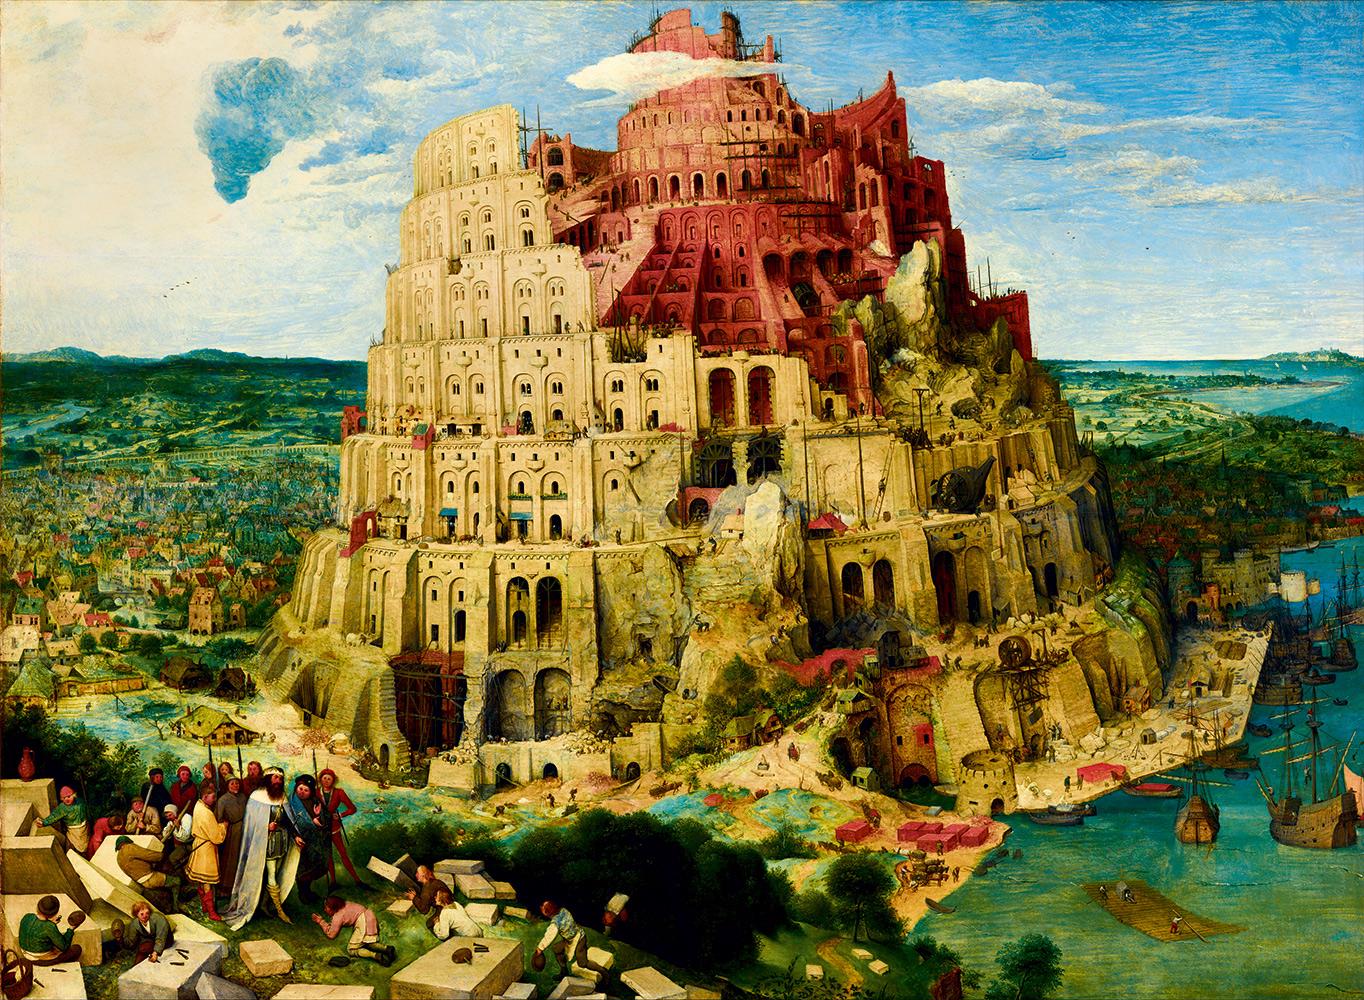 Puzzle Brueghel: Babilonska kula, 1563